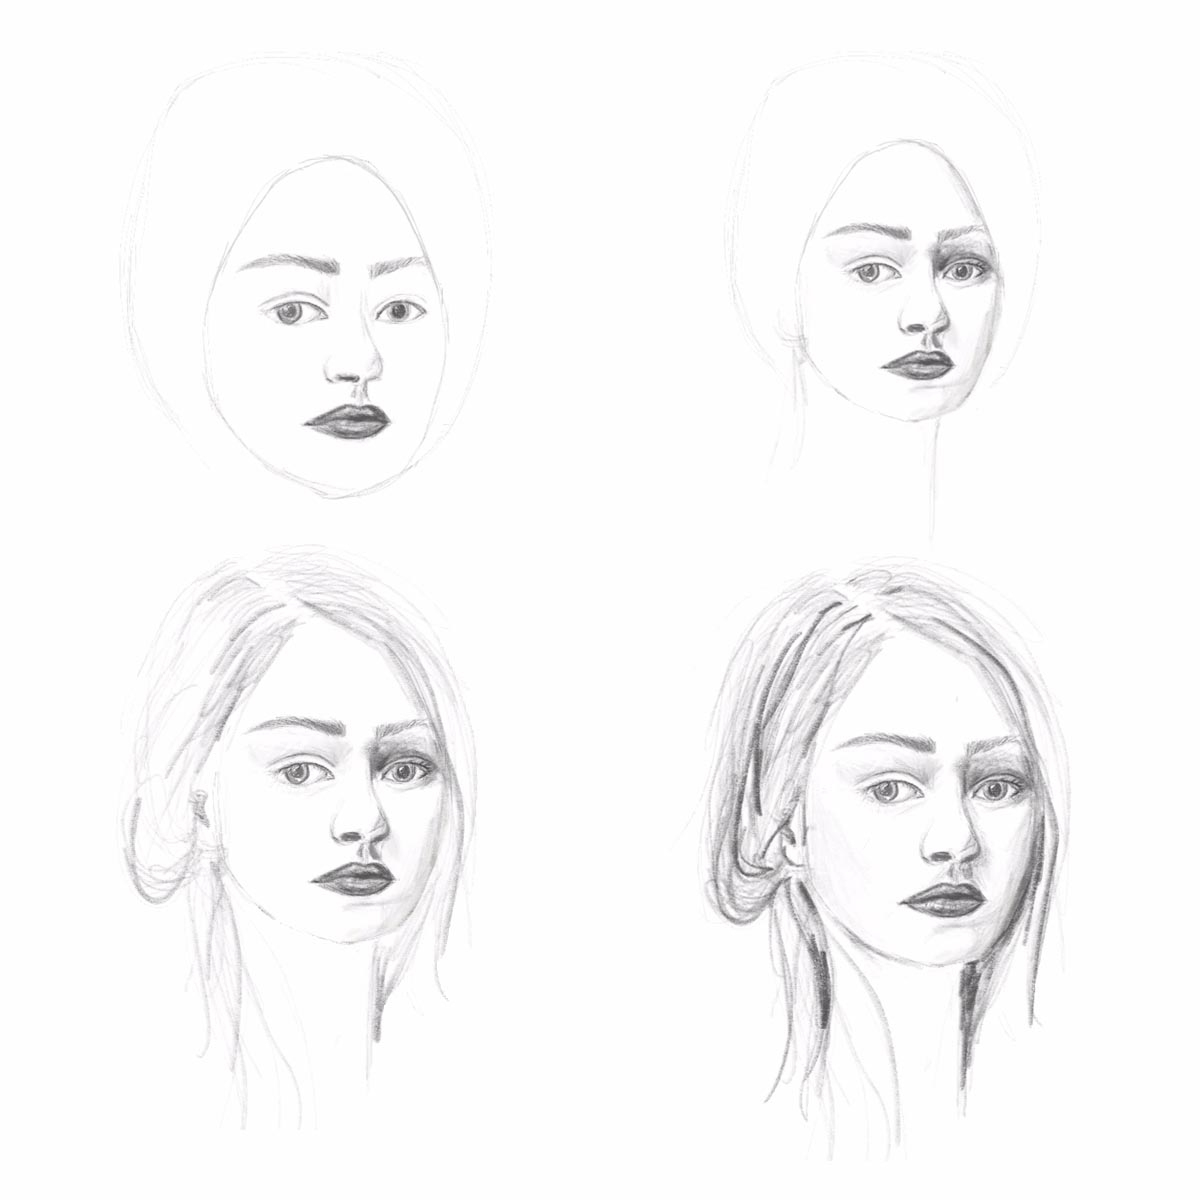 In 5 Schritten Gesichter Zeichnen Lernen | Hermine On Walk ganzes Portrait Zeichnen Lernen Schritt Für Schritt